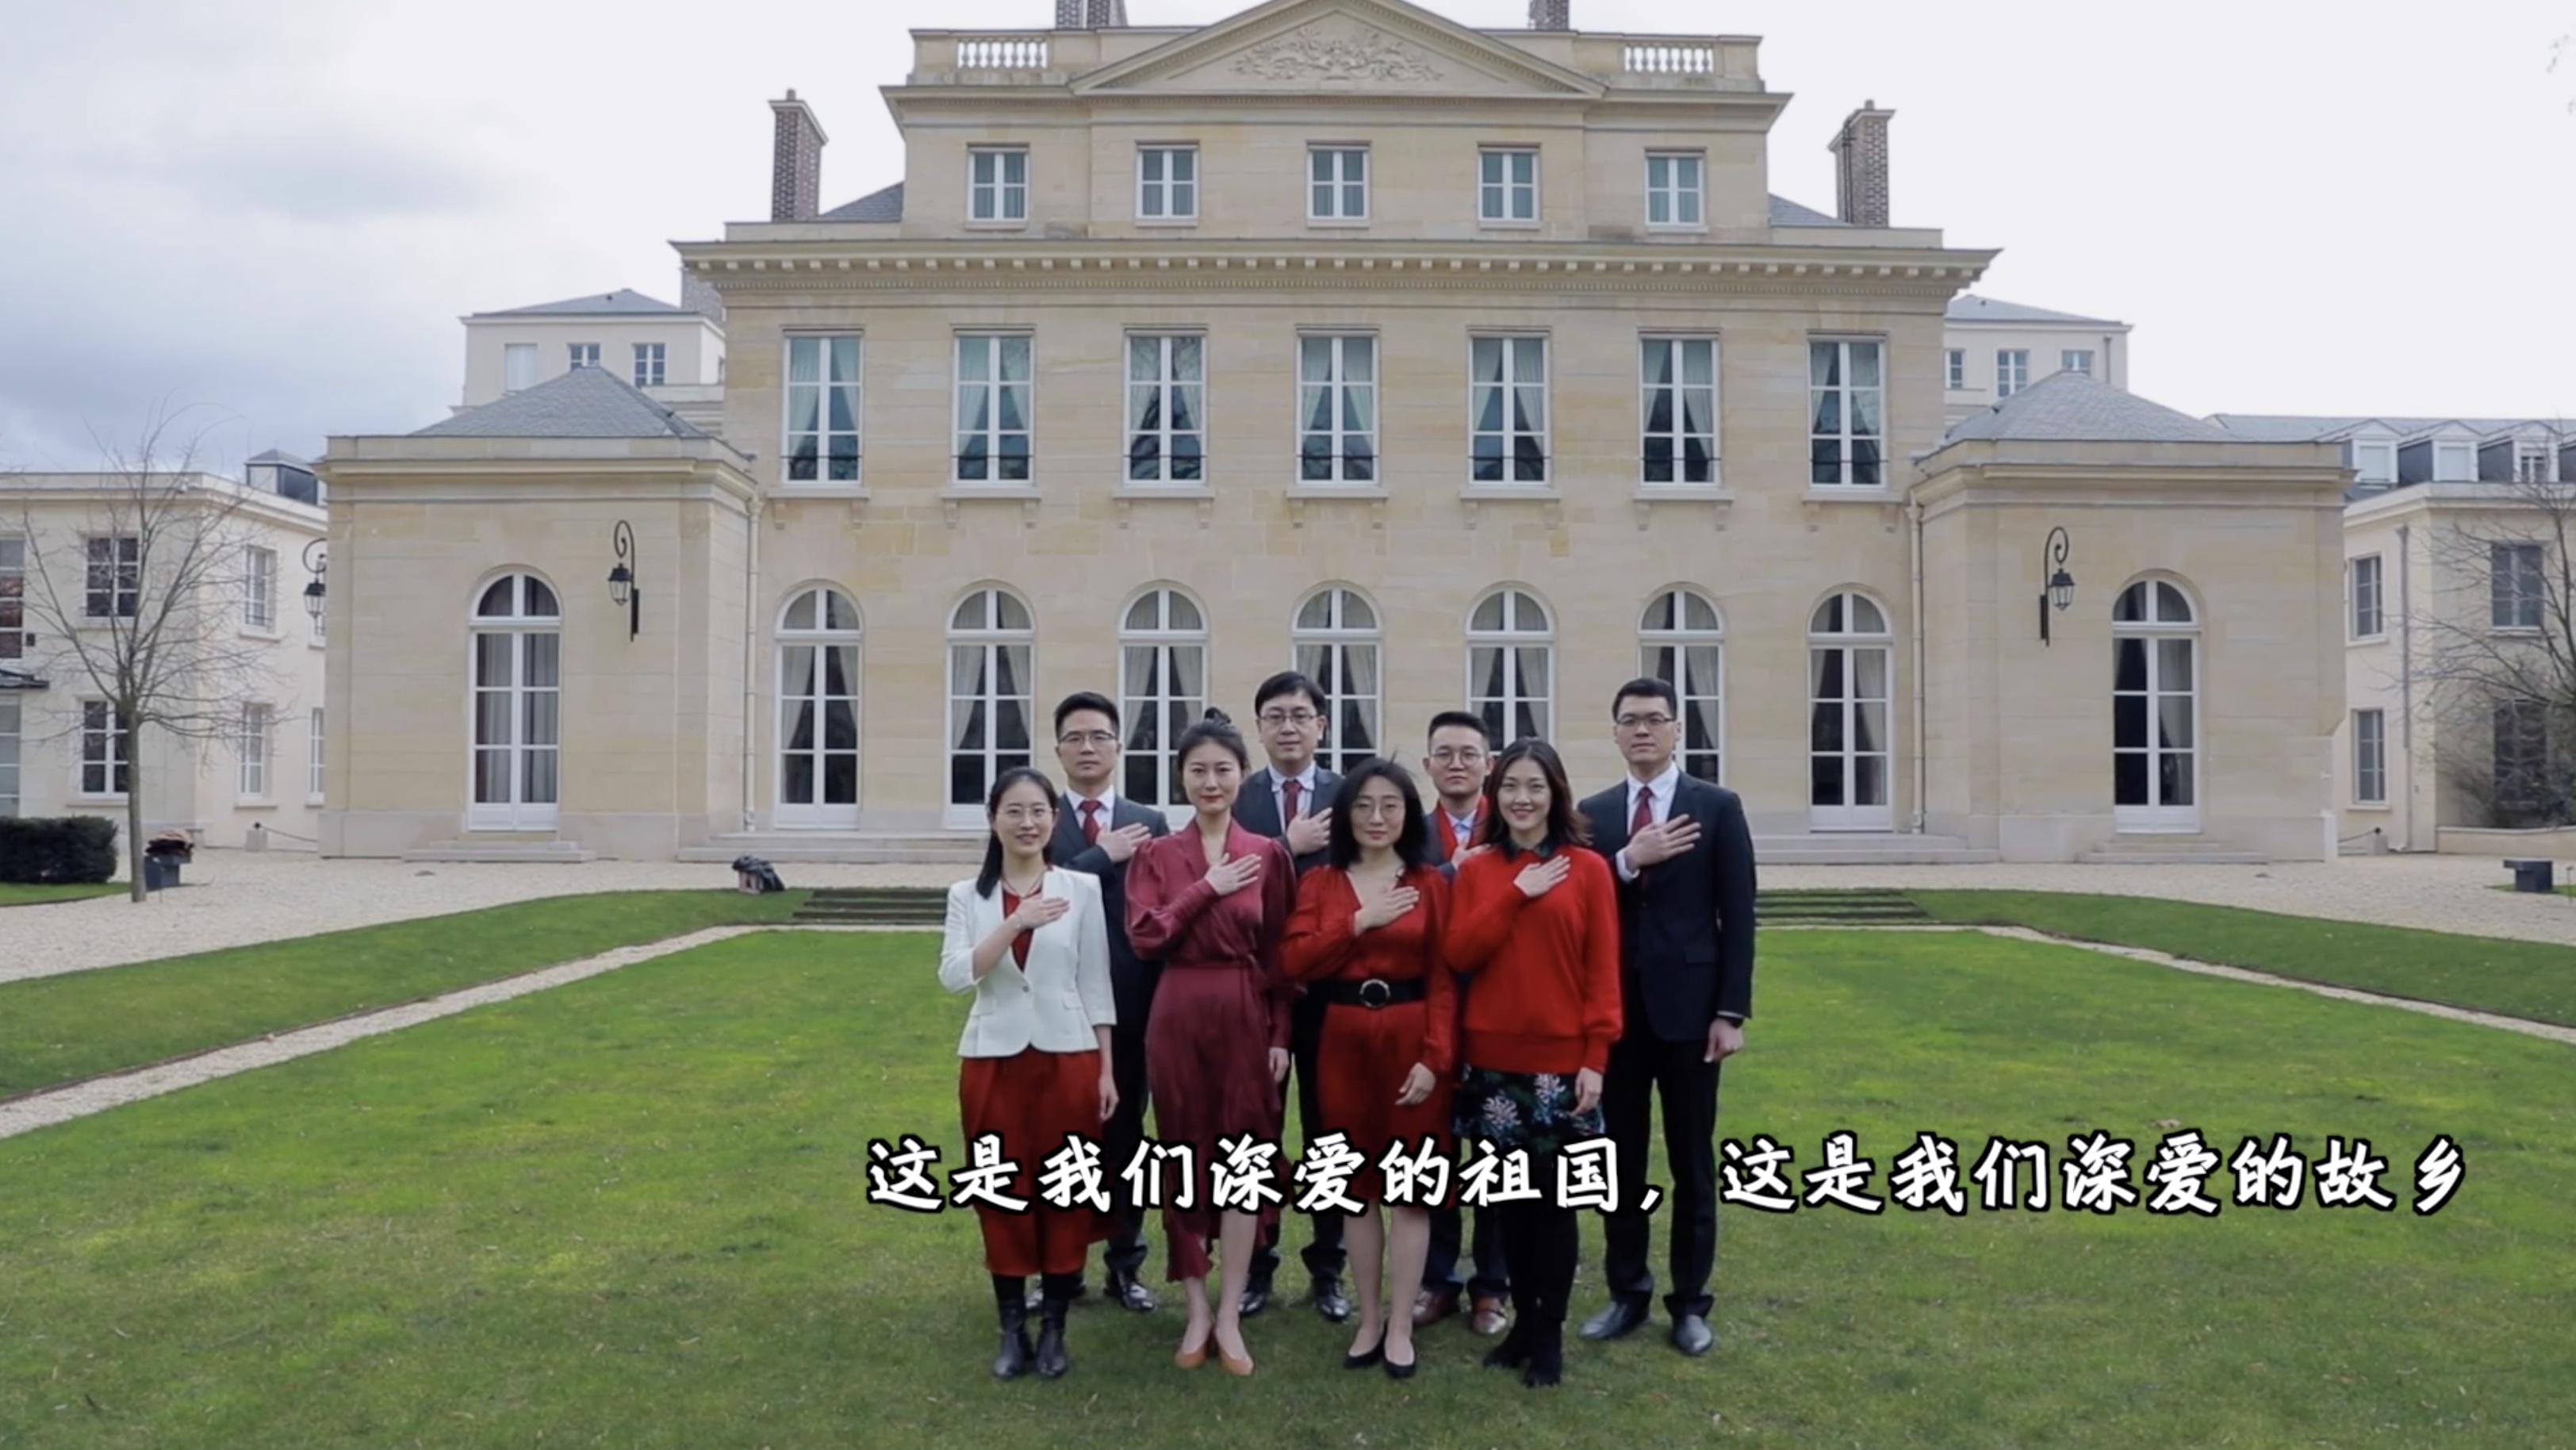 中国驻法国大使馆图片图片